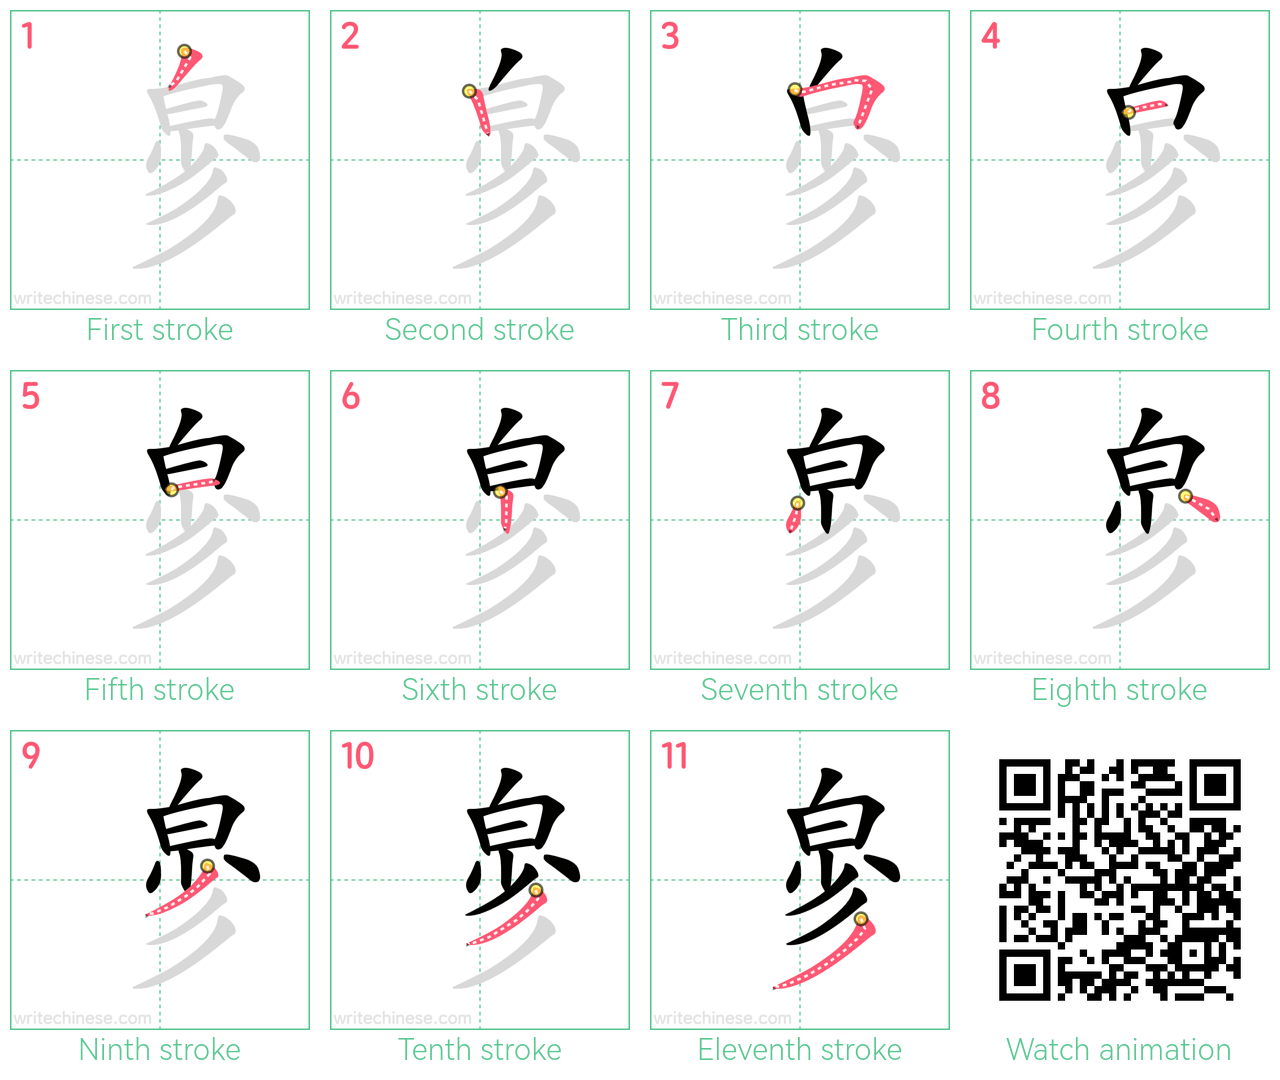 㣎 step-by-step stroke order diagrams